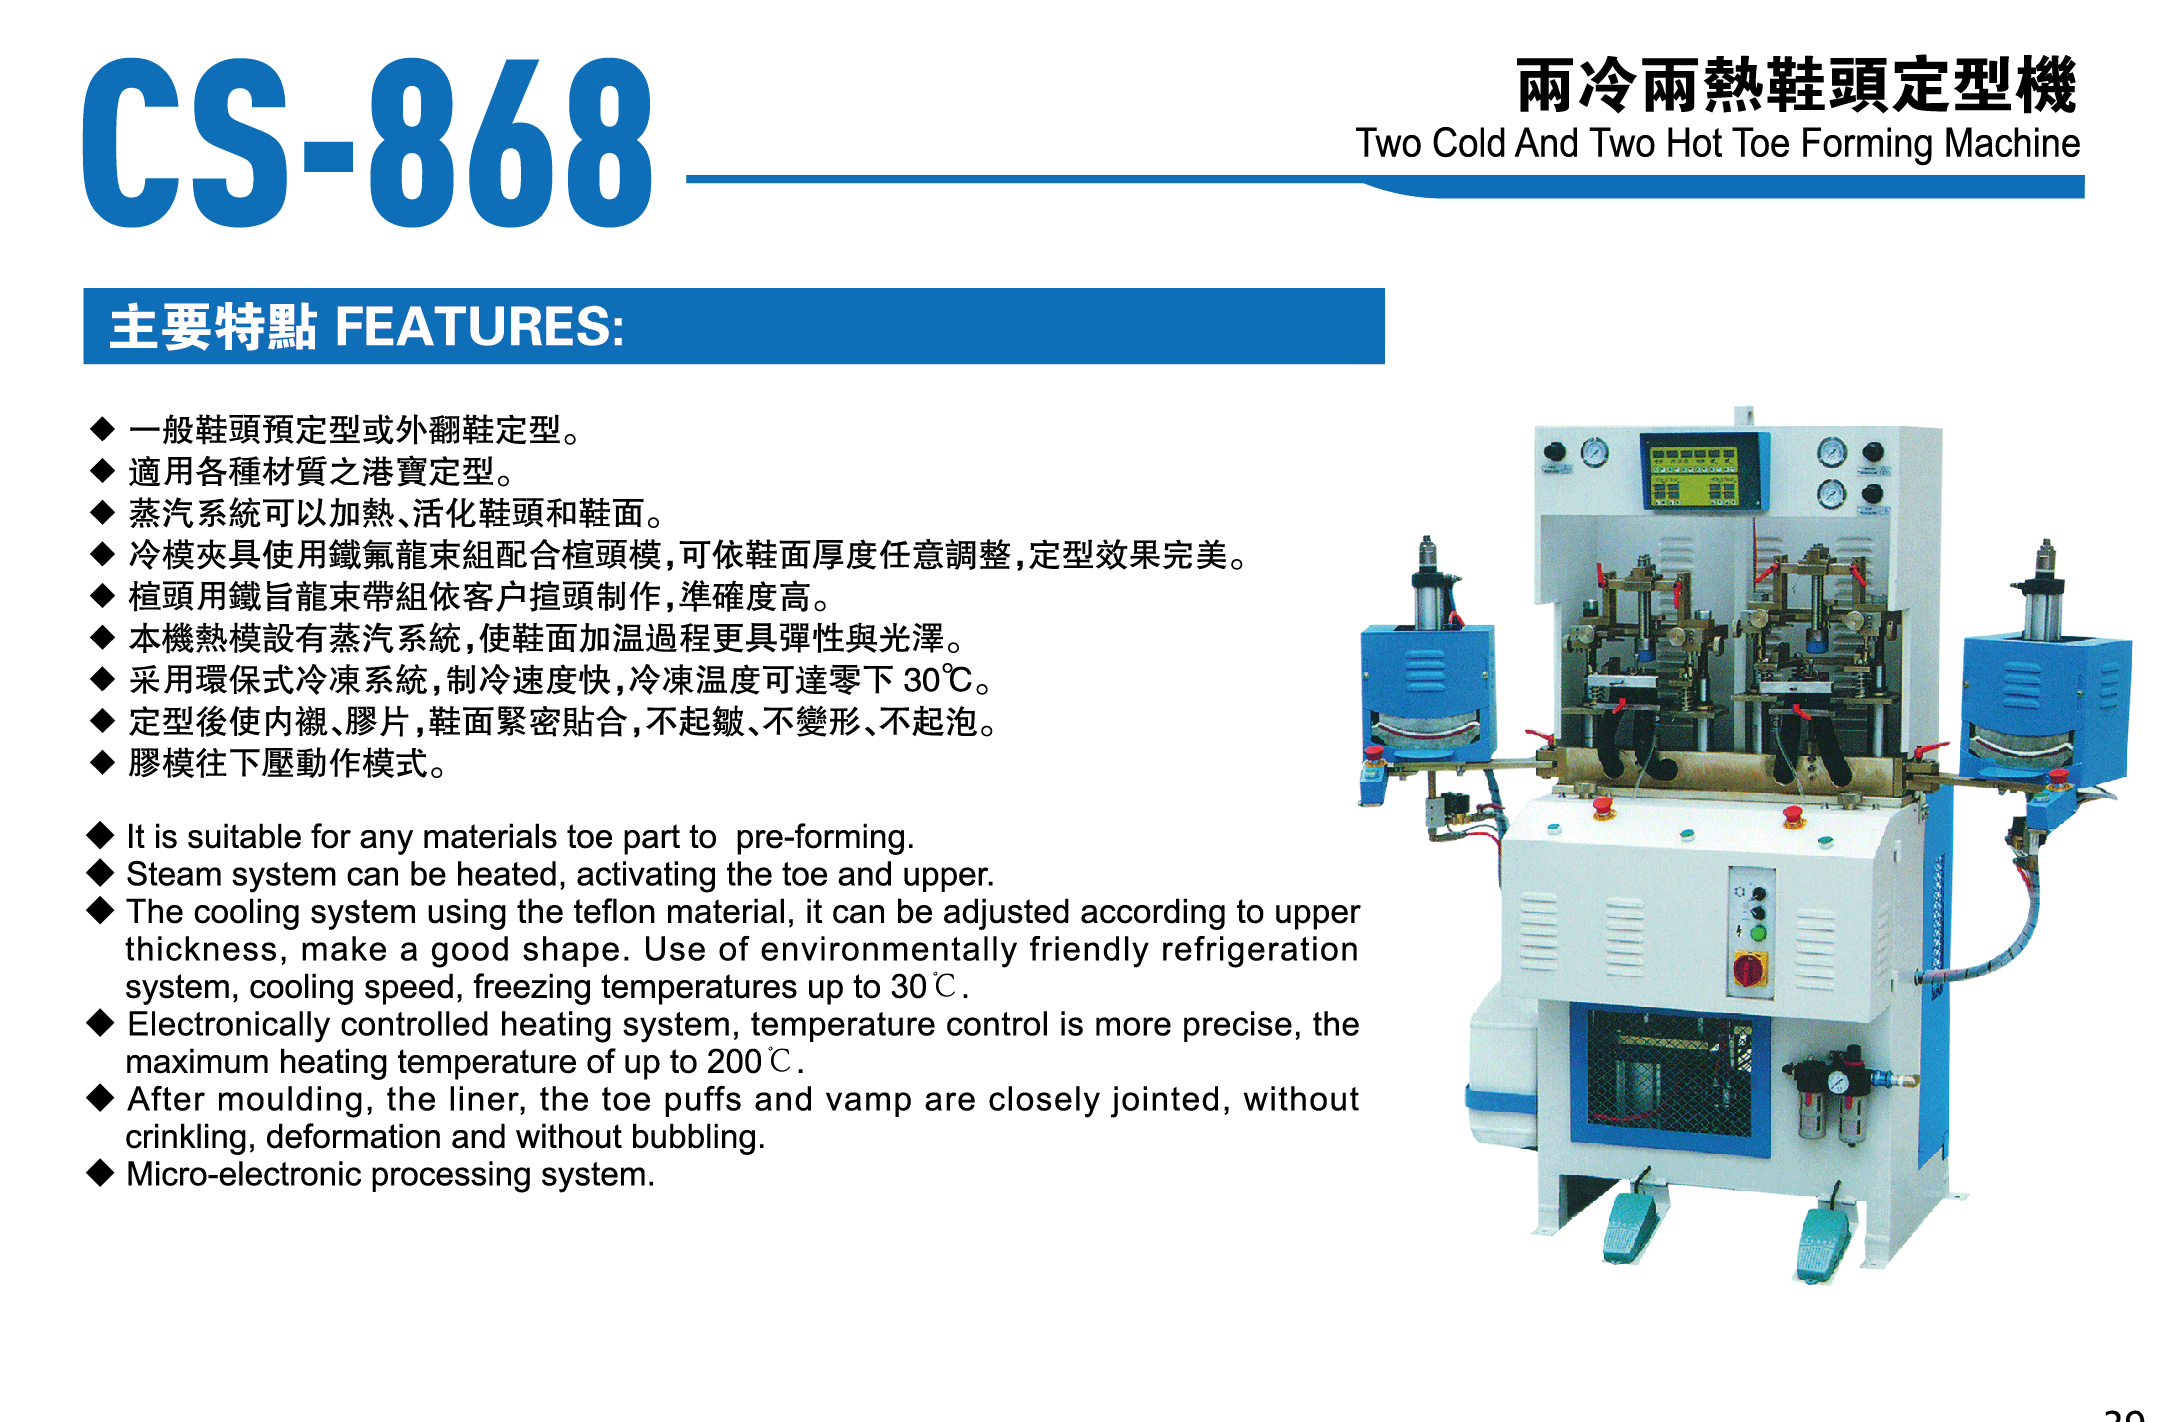 CS-868